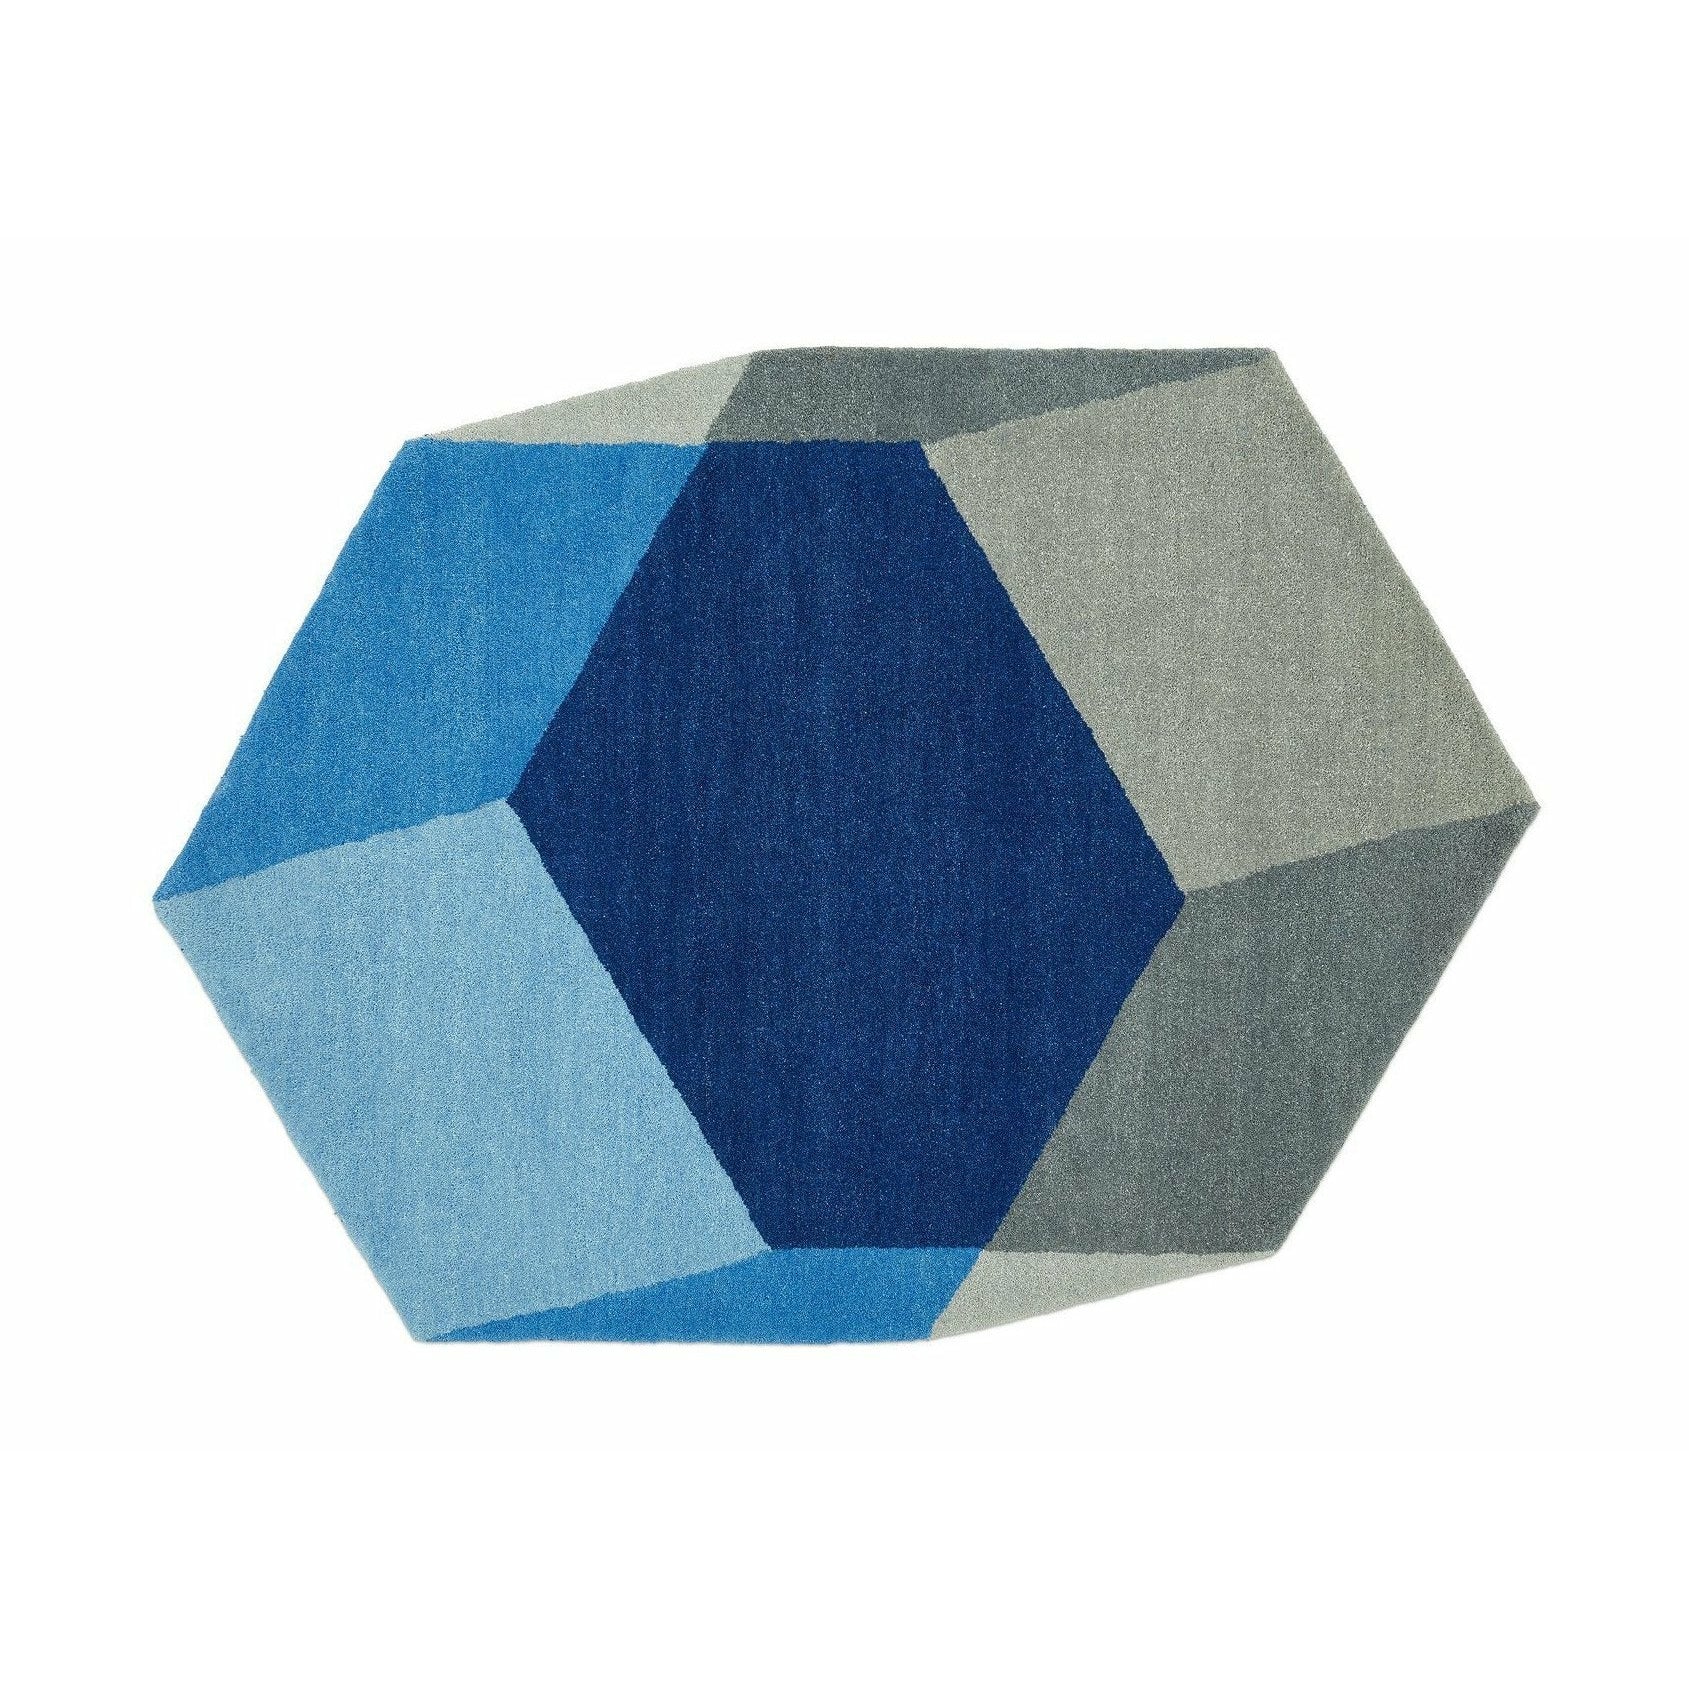 Puik Iso tæppe hexagon, blå